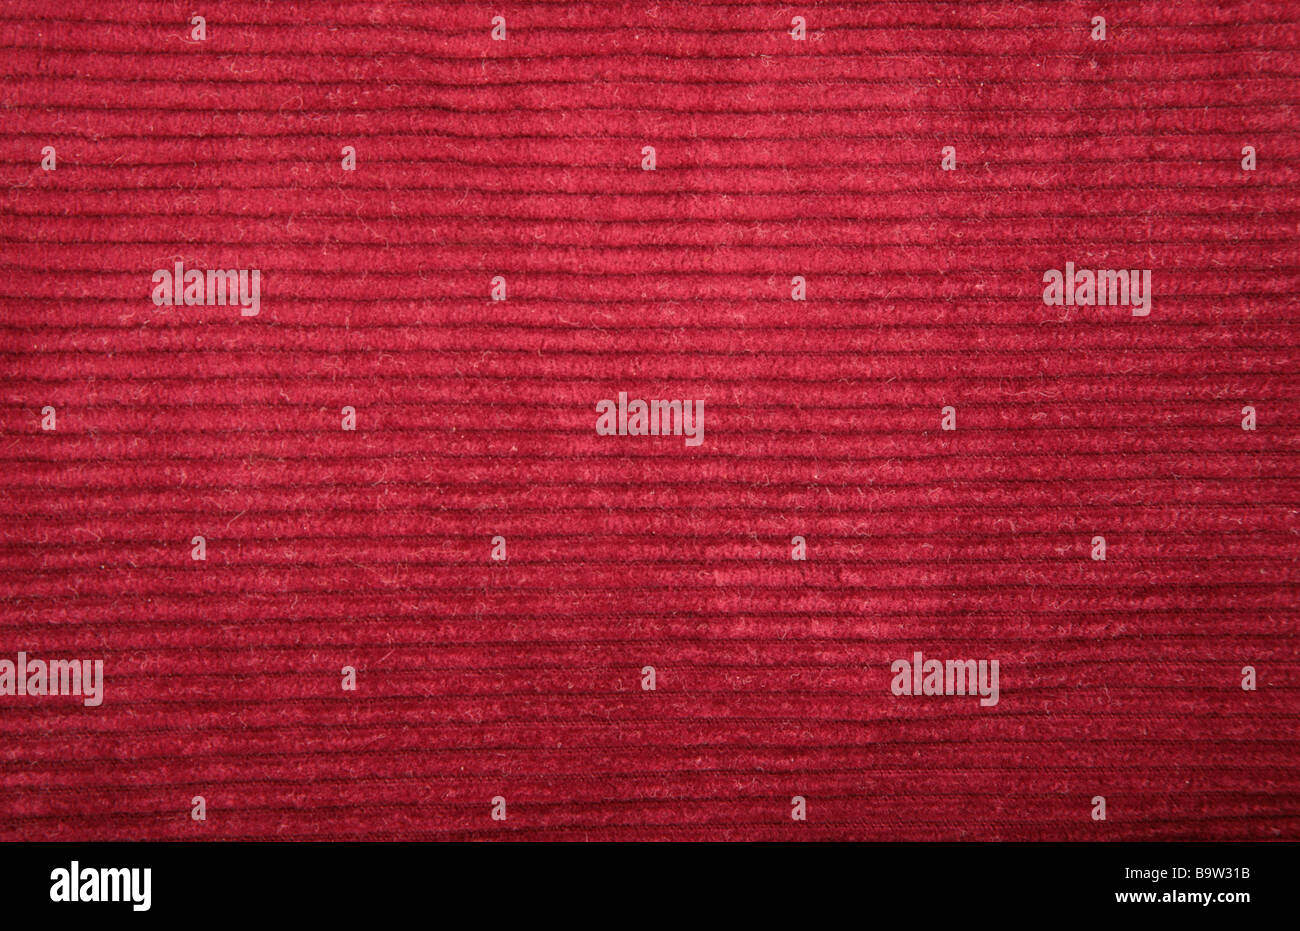 red velveteen texture Stock Photo